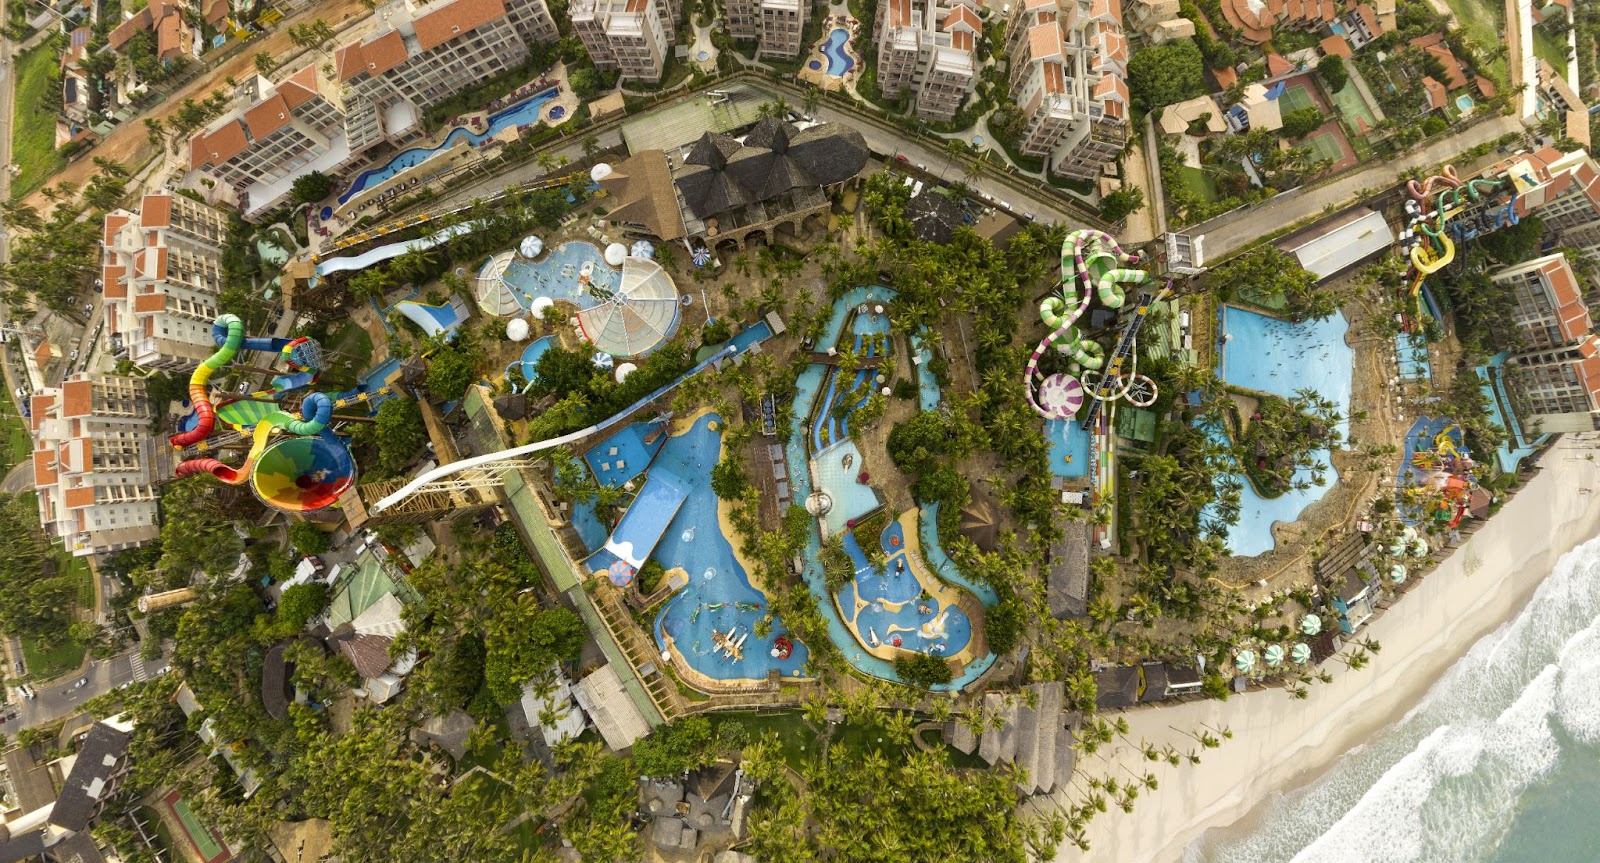 Vista aérea do Beach Park, um grande parque aquático na beira da praia. Ele tem piscinas de tamanhos diversos, tobogãs e um complexo de hotéis. 